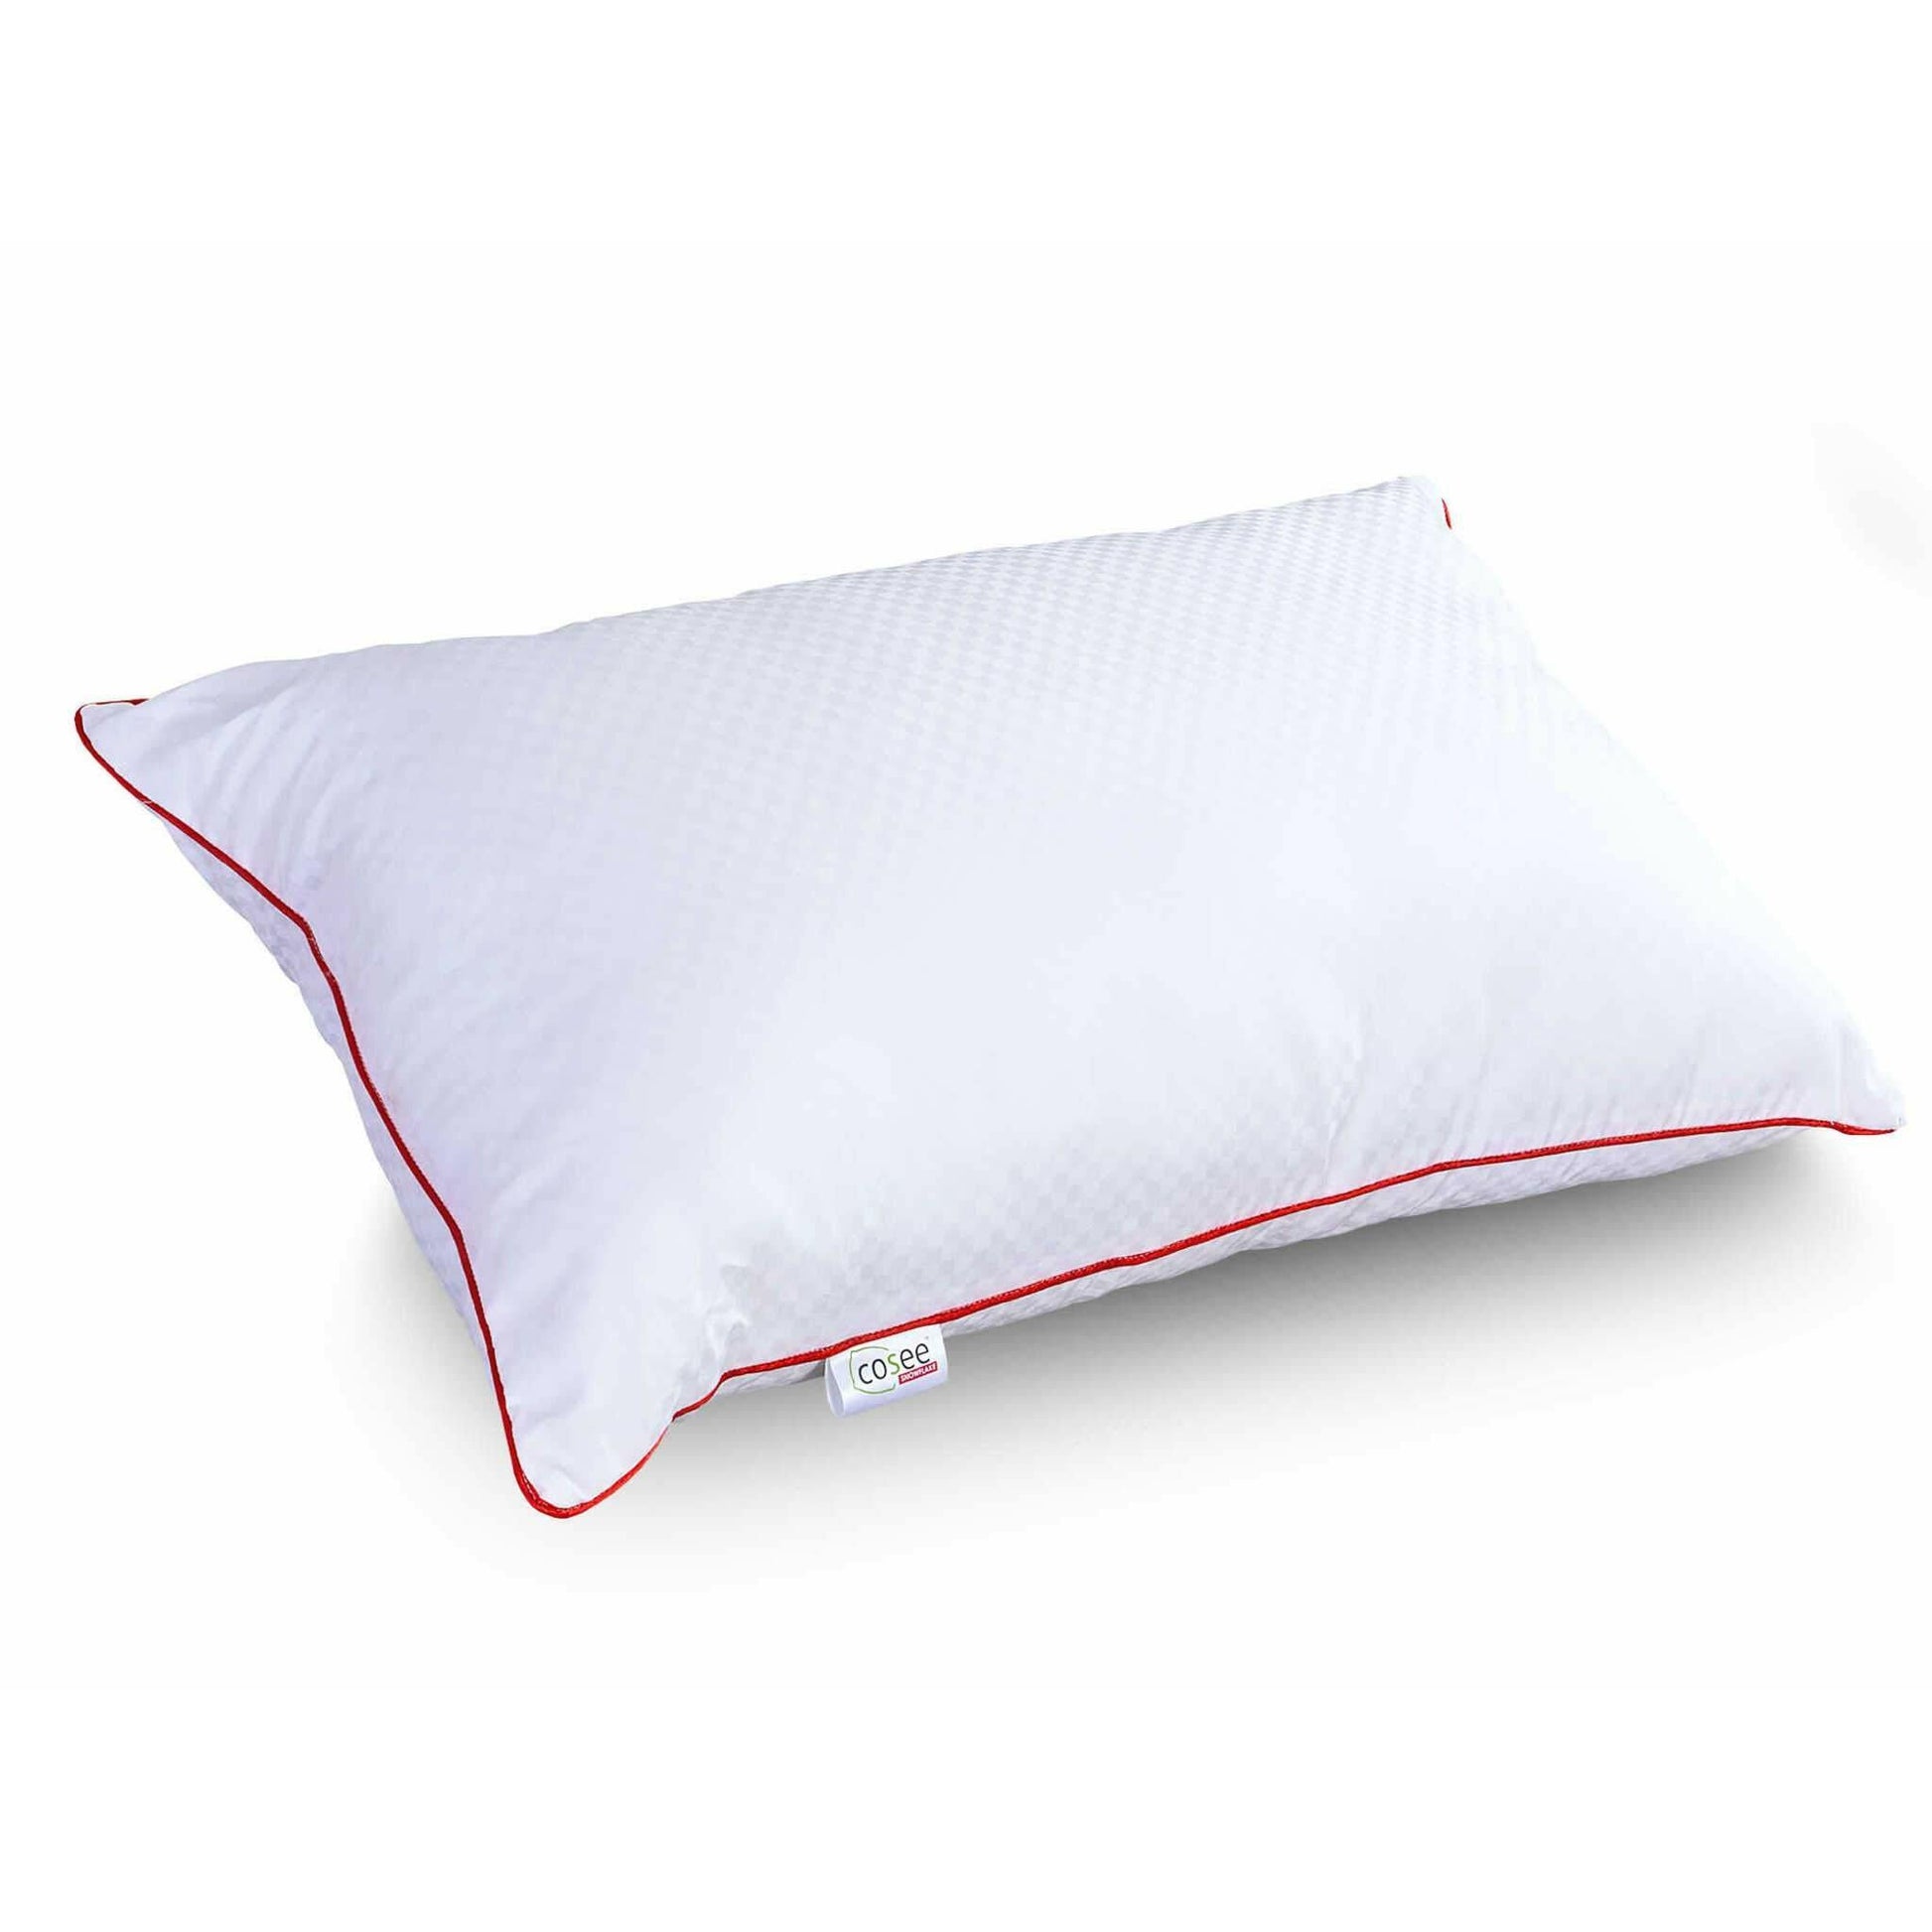 SnowFlake Micro Fibre Pillow - SleepCosee